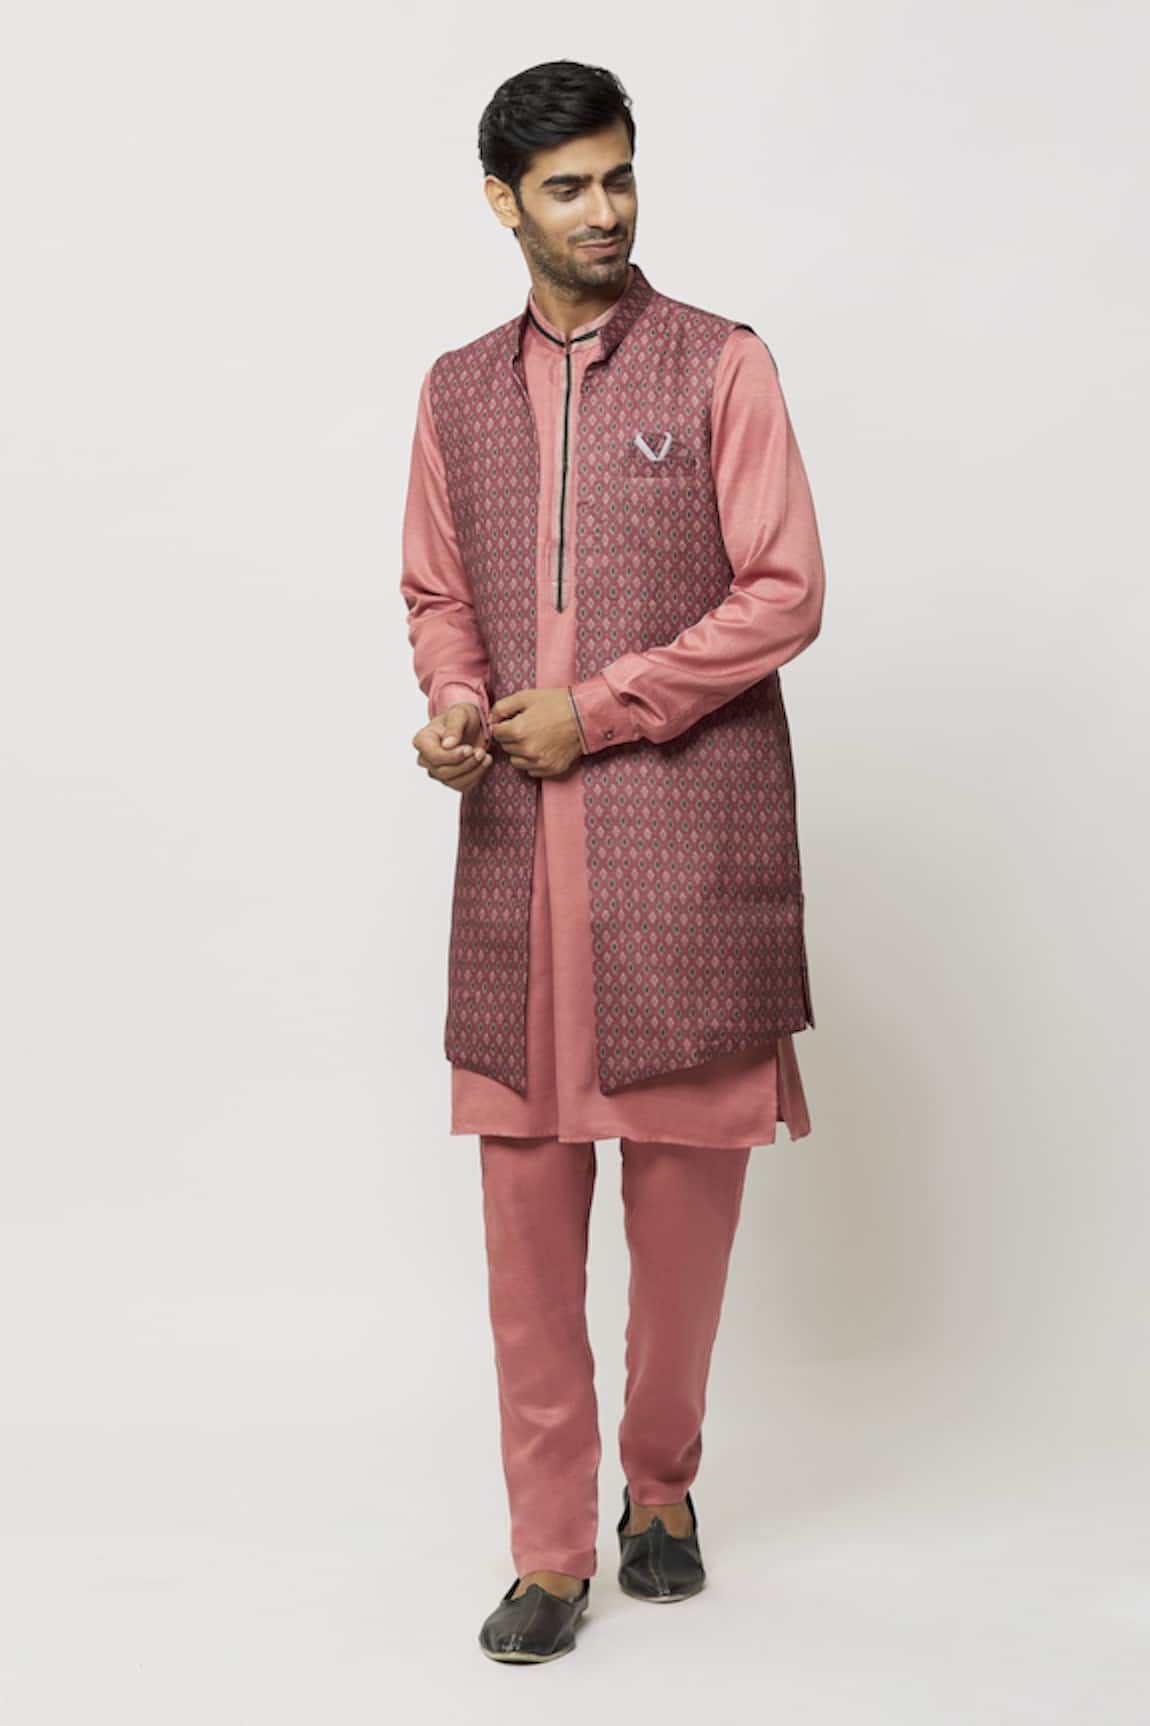 Aryavir Malhotra Cuffed Sleeve Kurta Printed Jacket Set